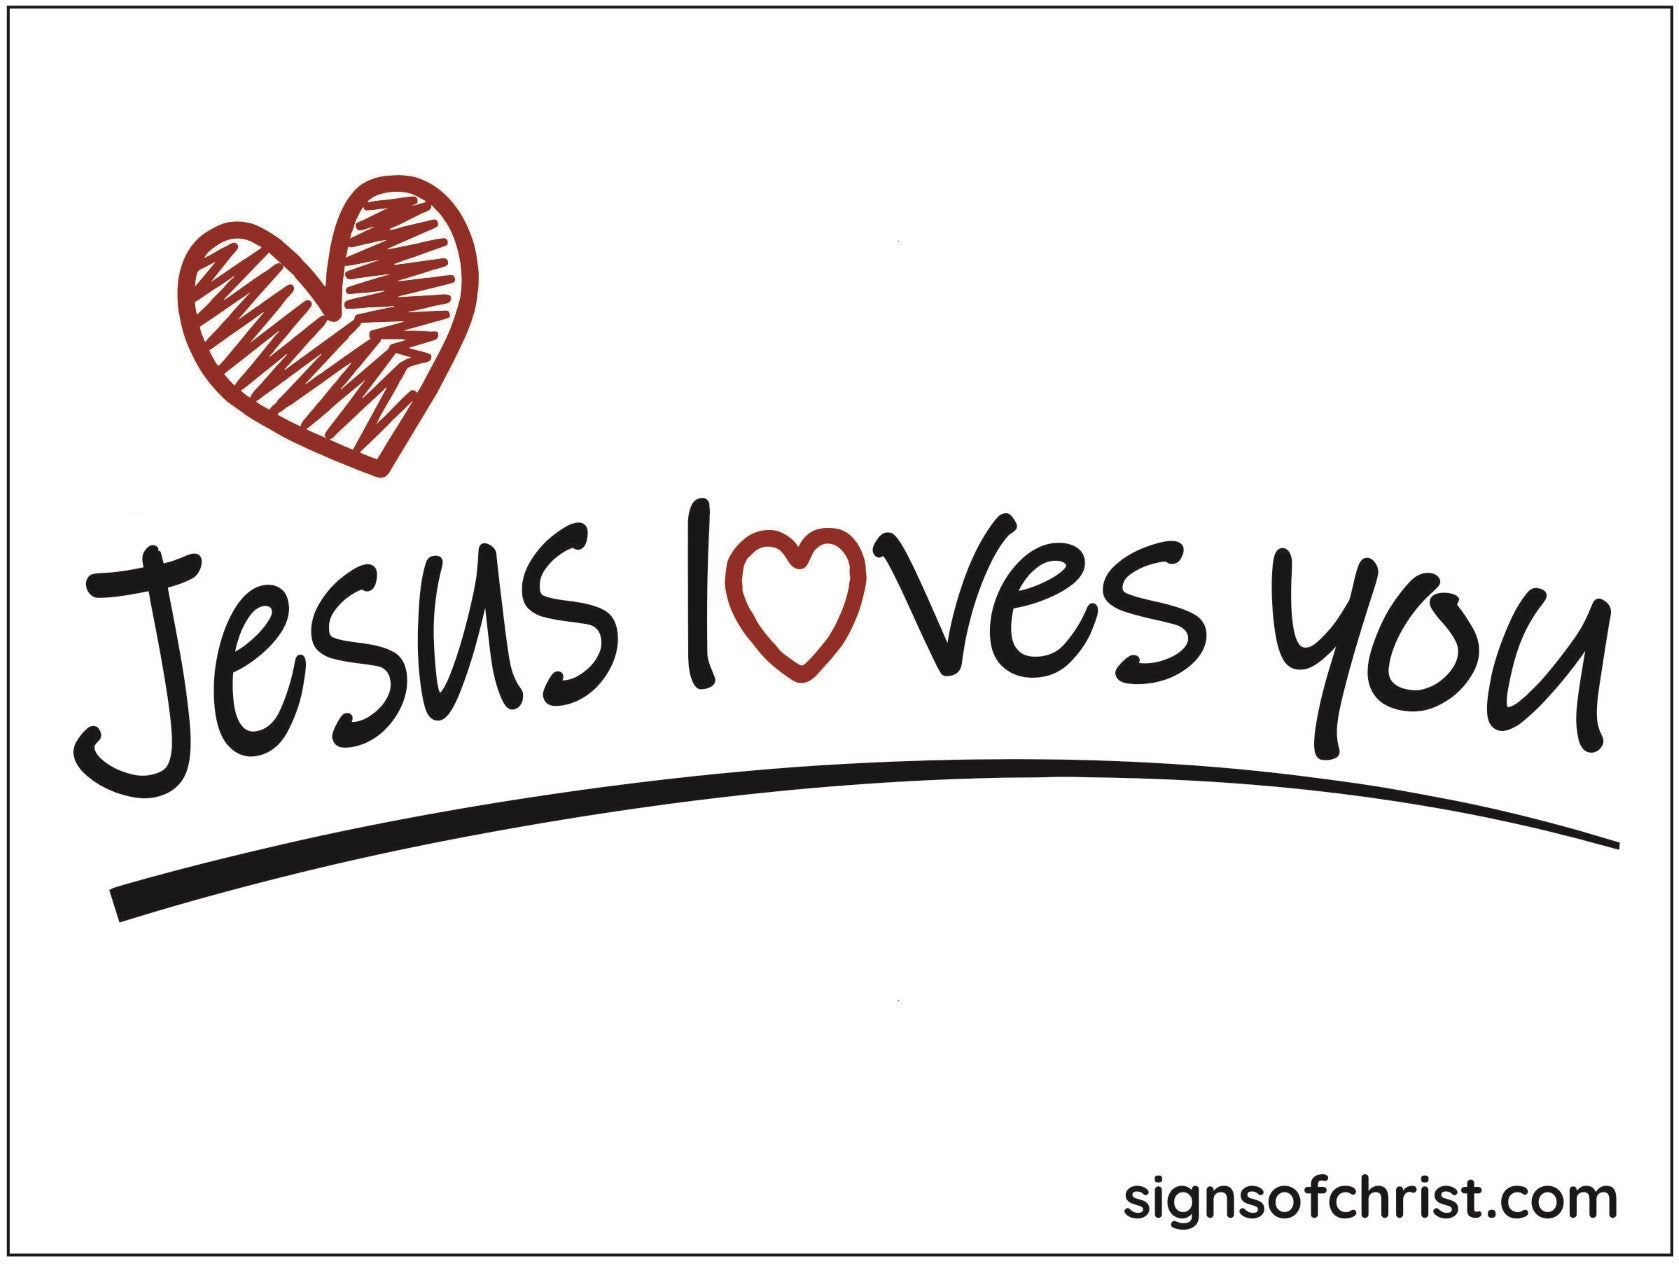 Jesus loves you yard sign